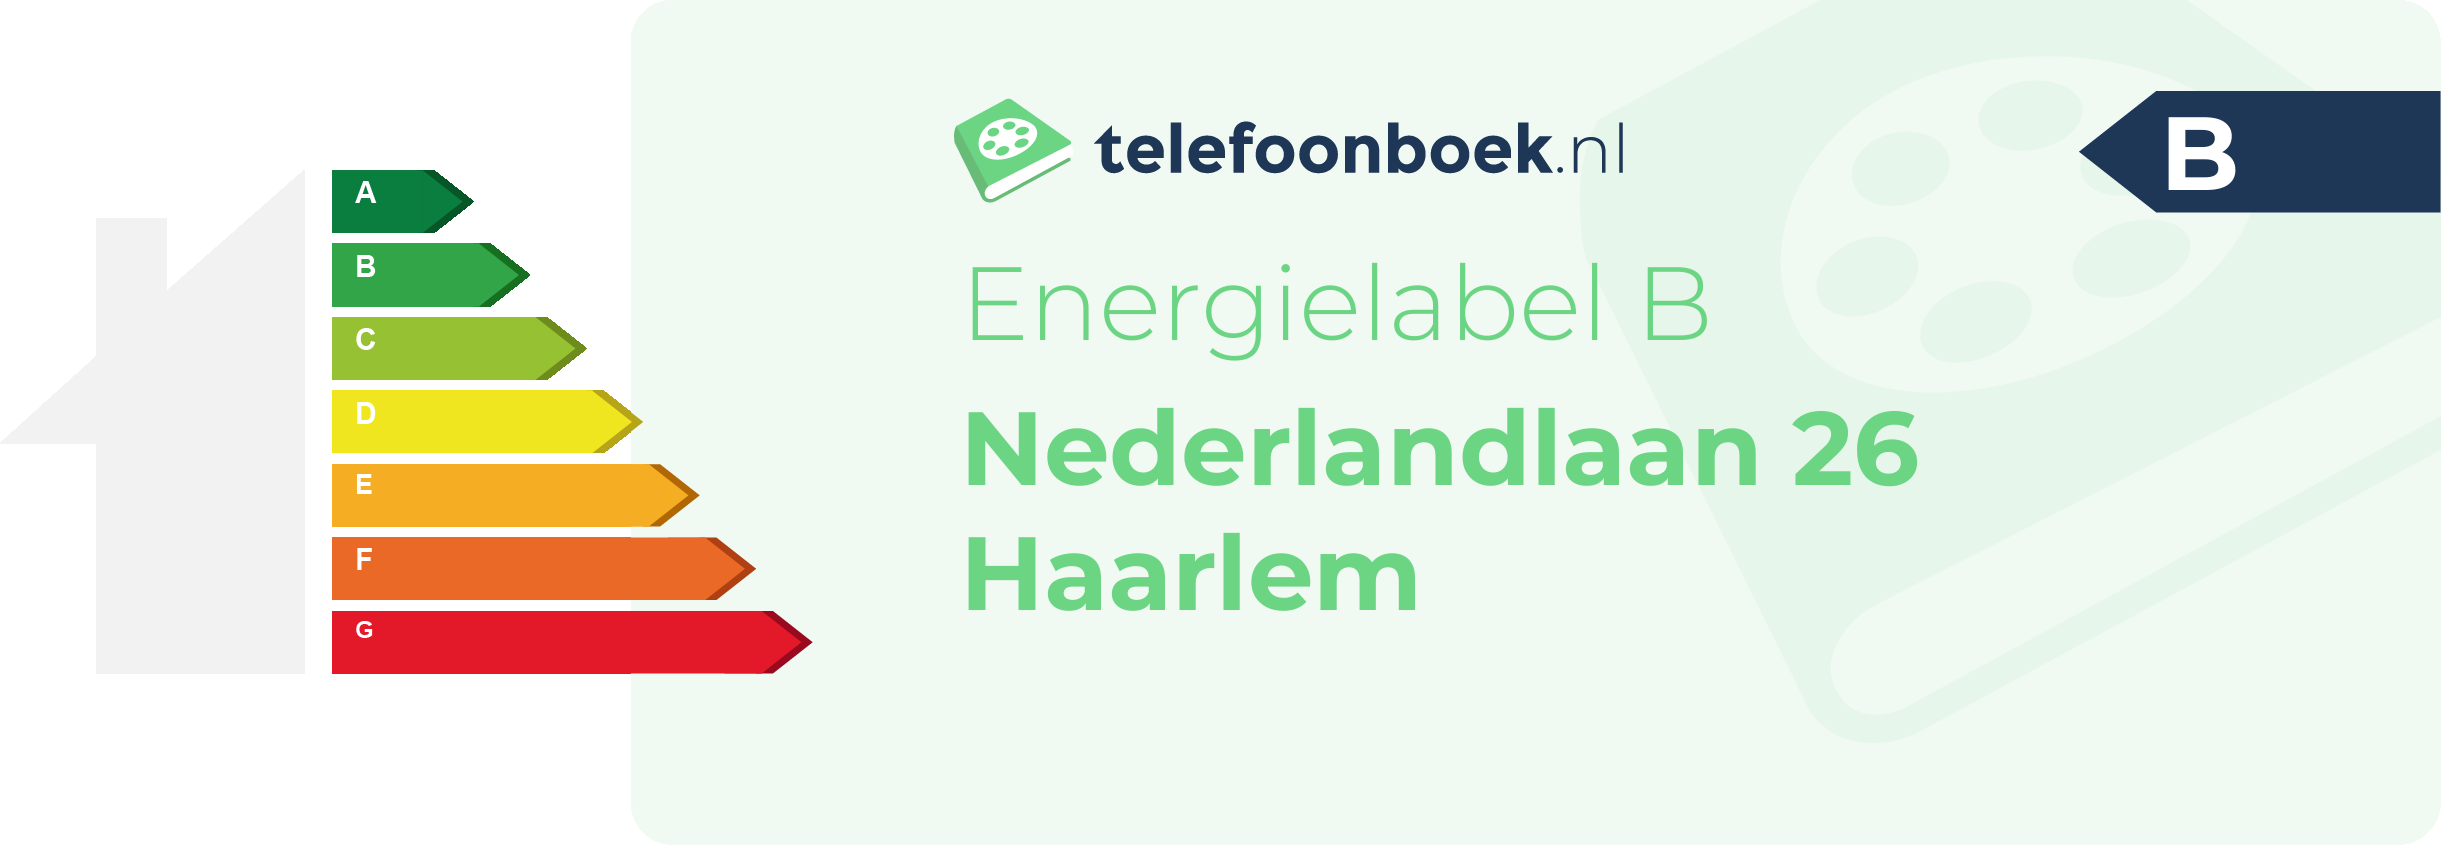 Energielabel Nederlandlaan 26 Haarlem